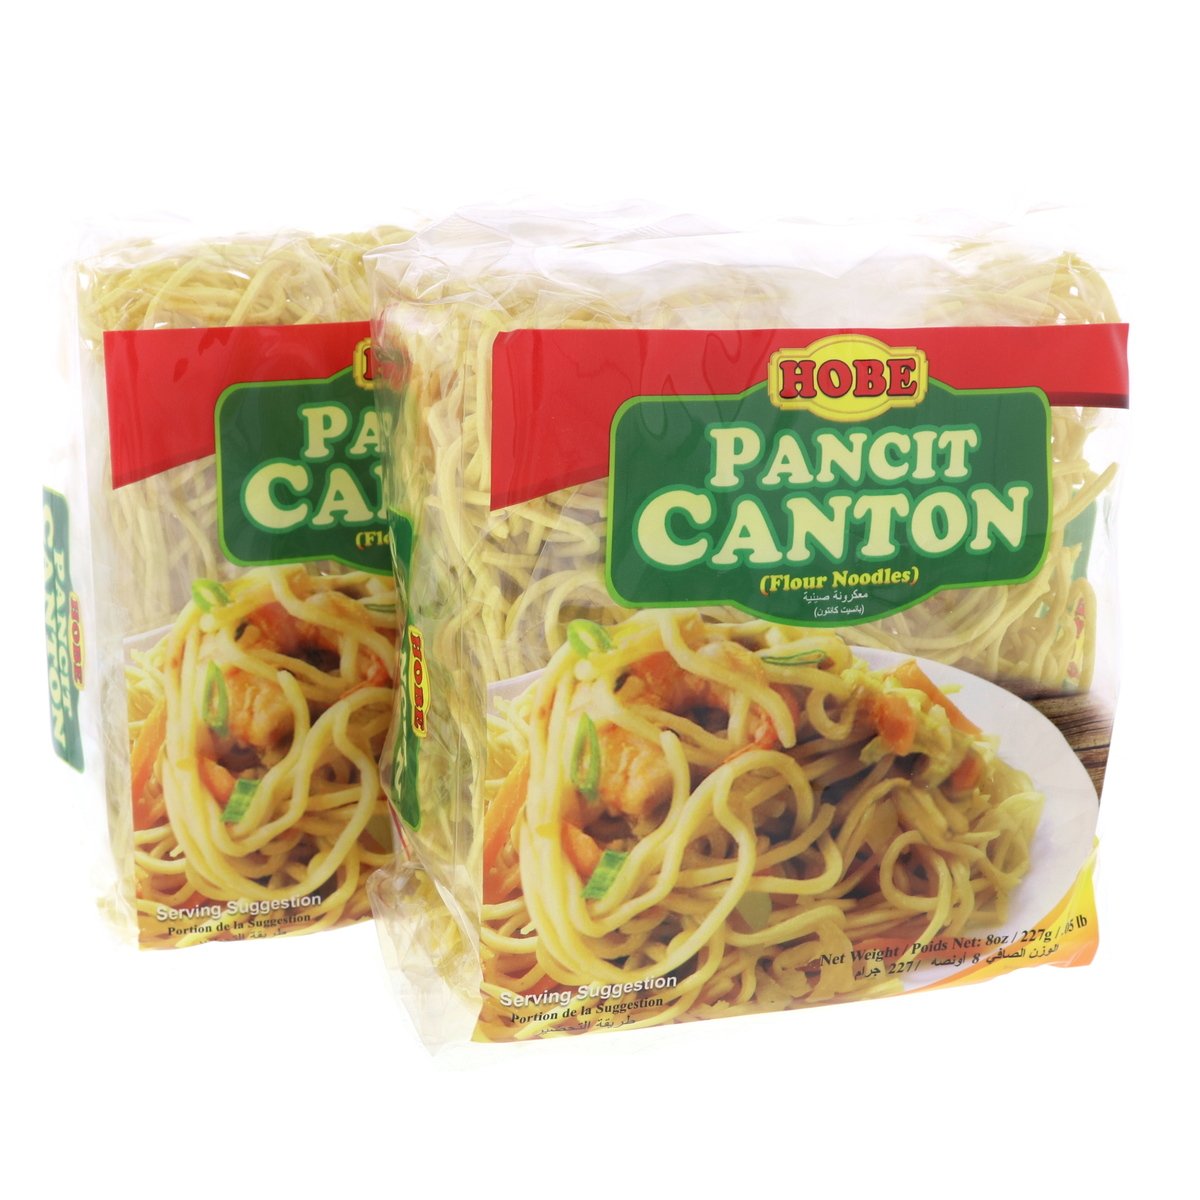 Hobe Pancit Canton Flour Noodles Value Pack 2 x 227 g